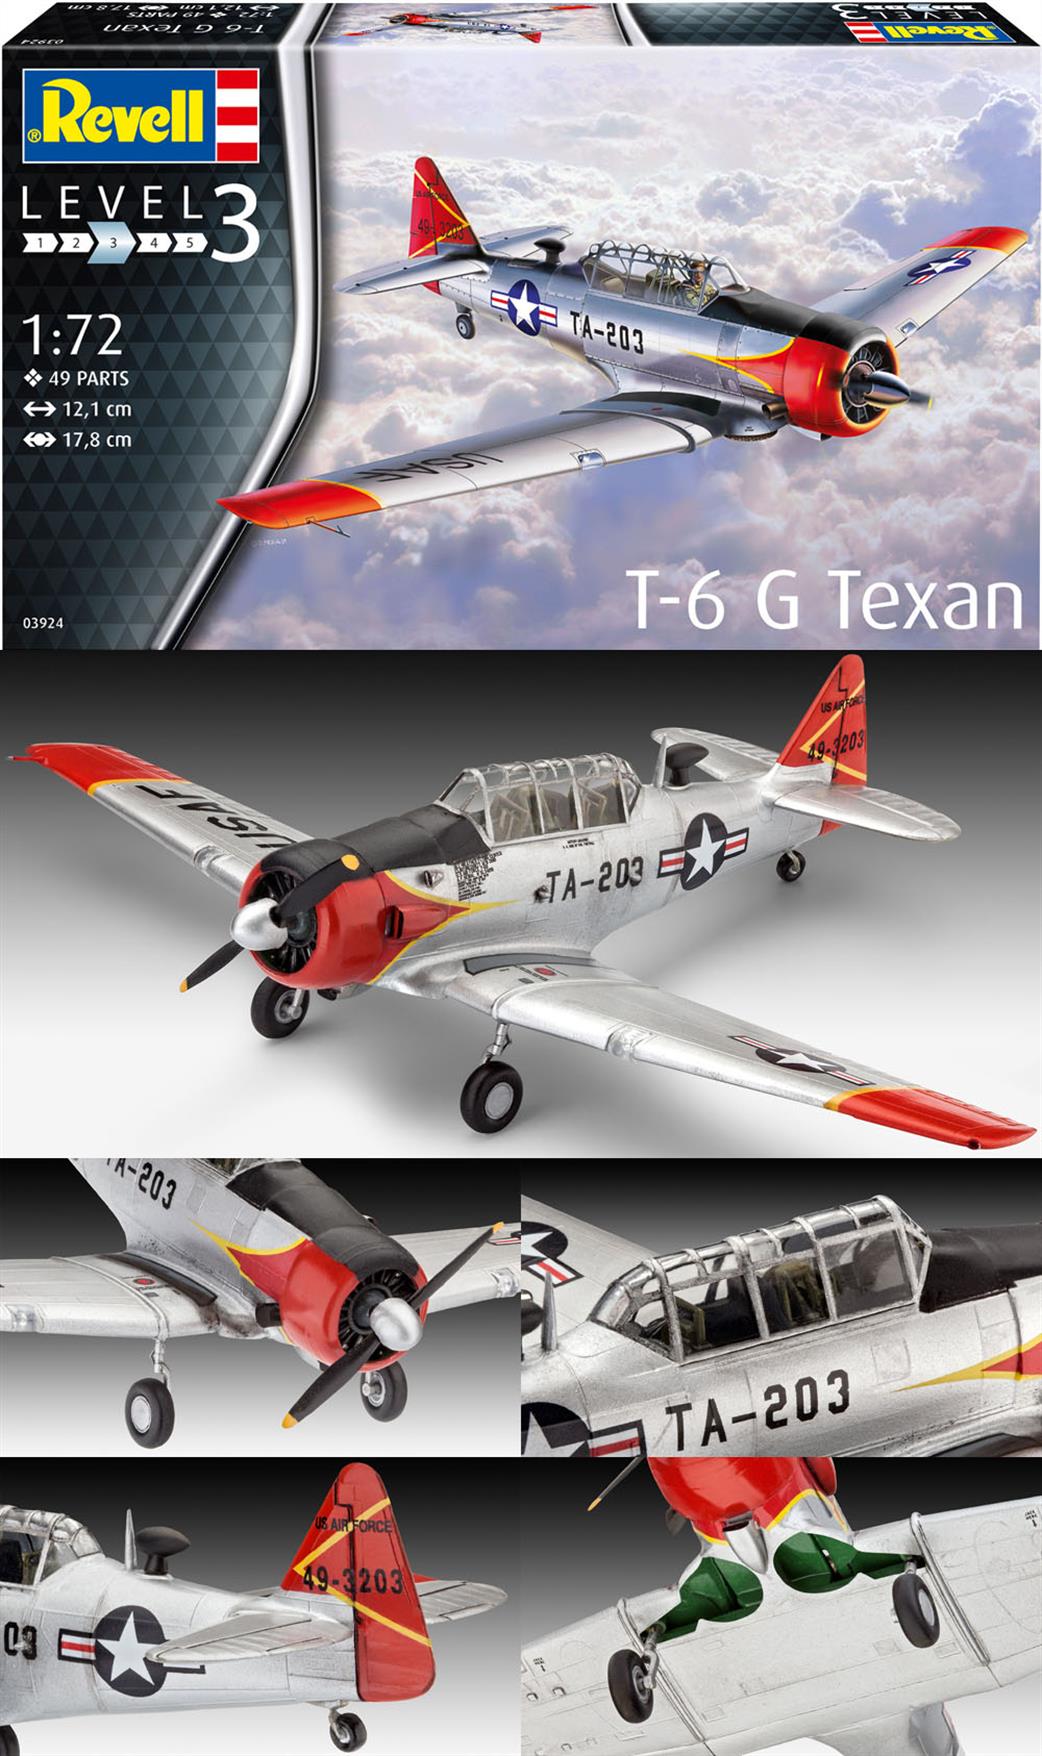 Revell 1/72 03924 T-6 G Texan Advanced Trainer Kit